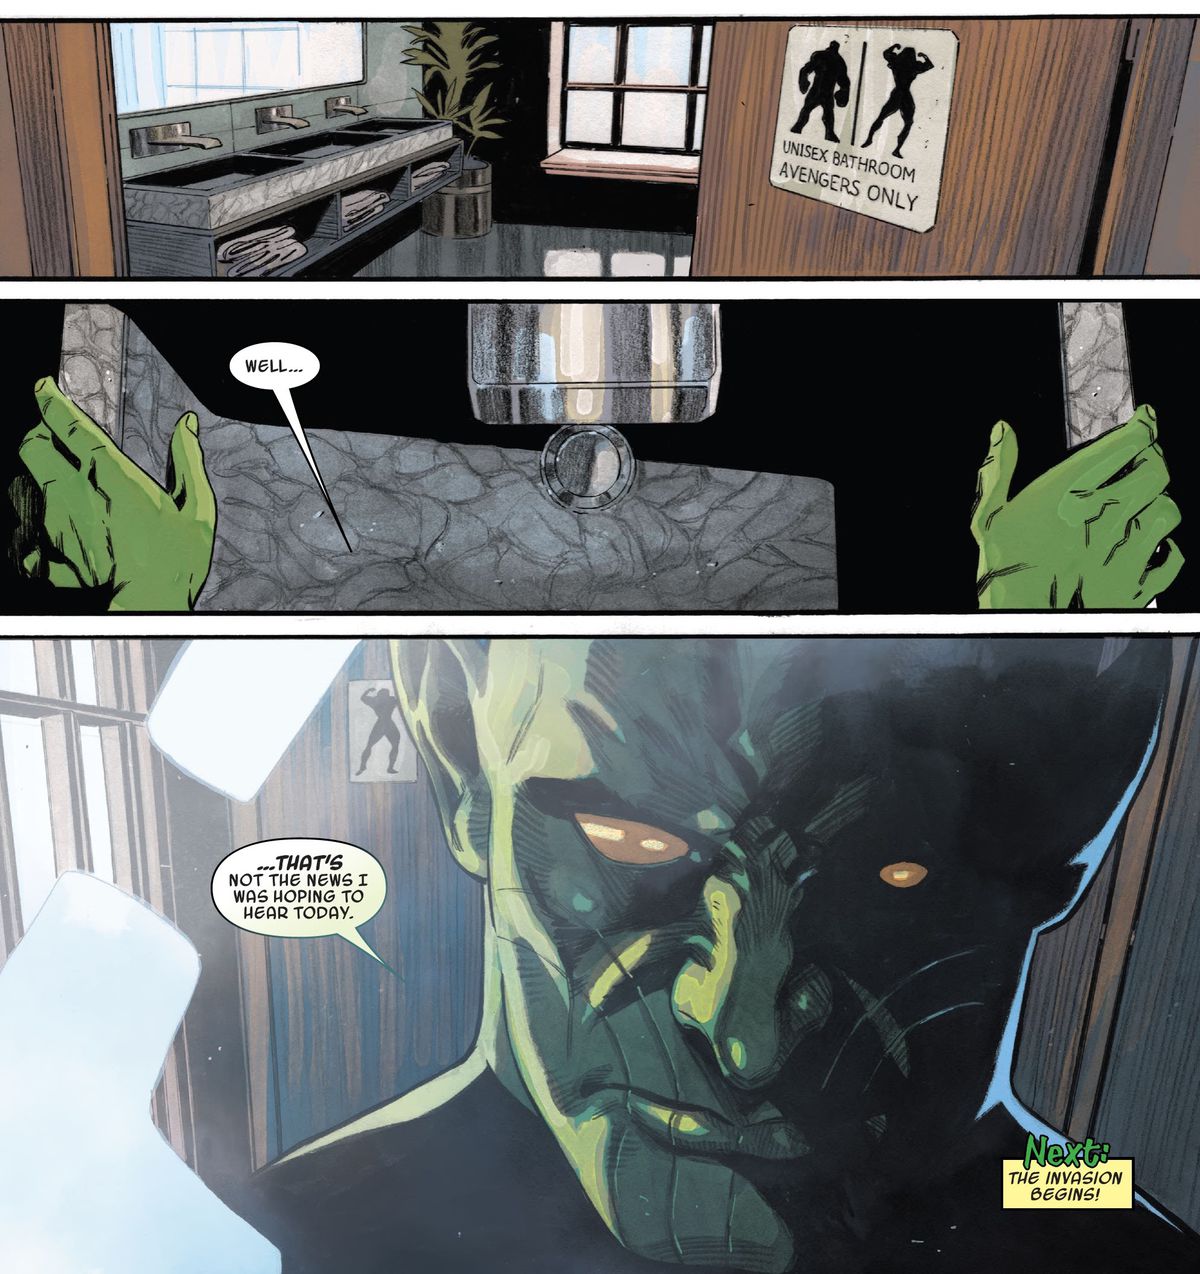 Una veduta della porta del bagno unisex per “Avengers Only”, contrassegnata da un cartello raffigurante Hulk e She-Hulk in silhouette.  All'interno, uno Skrull rivelato parla a se stesso in uno specchio 